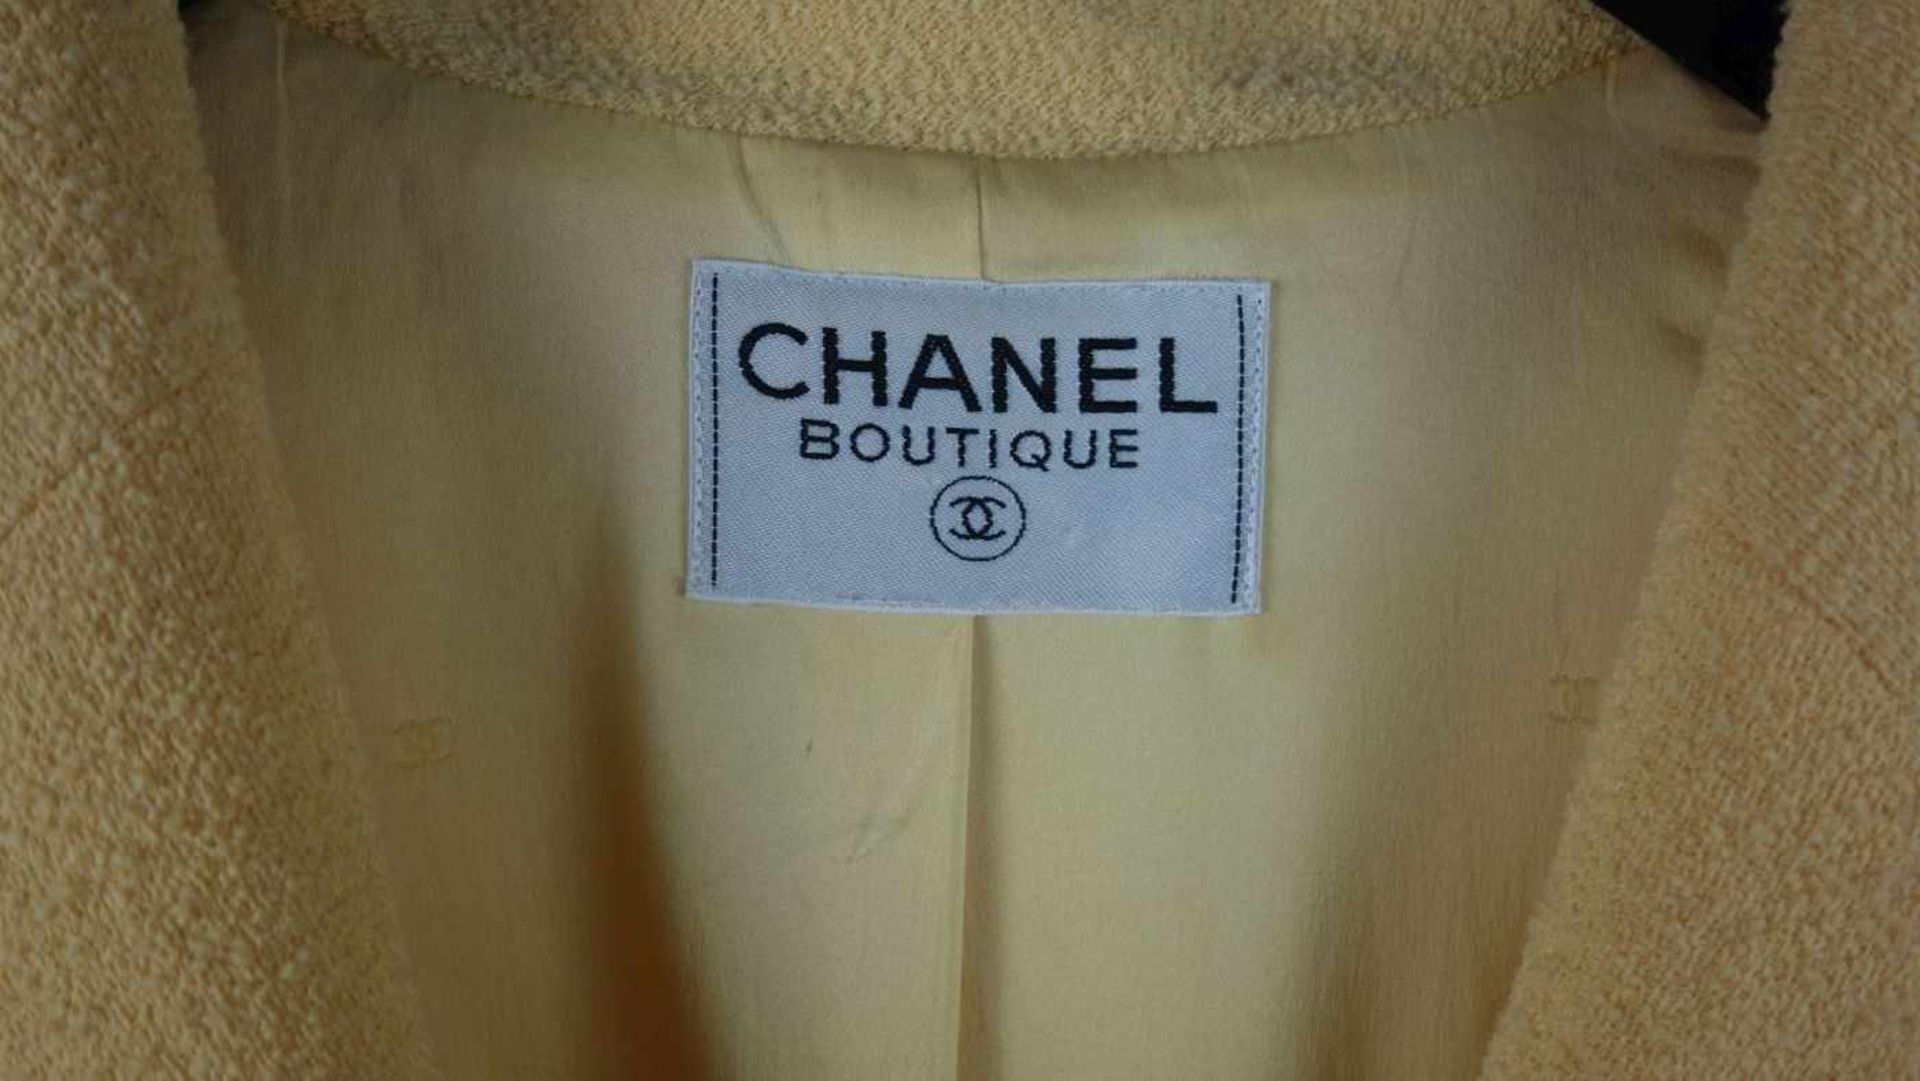 CHANEL DESIGNER BOUCLÉ KURZJACKE / BLAZER, Manufaktur Chanel / Paris. Innen auf Etikett - Image 2 of 7